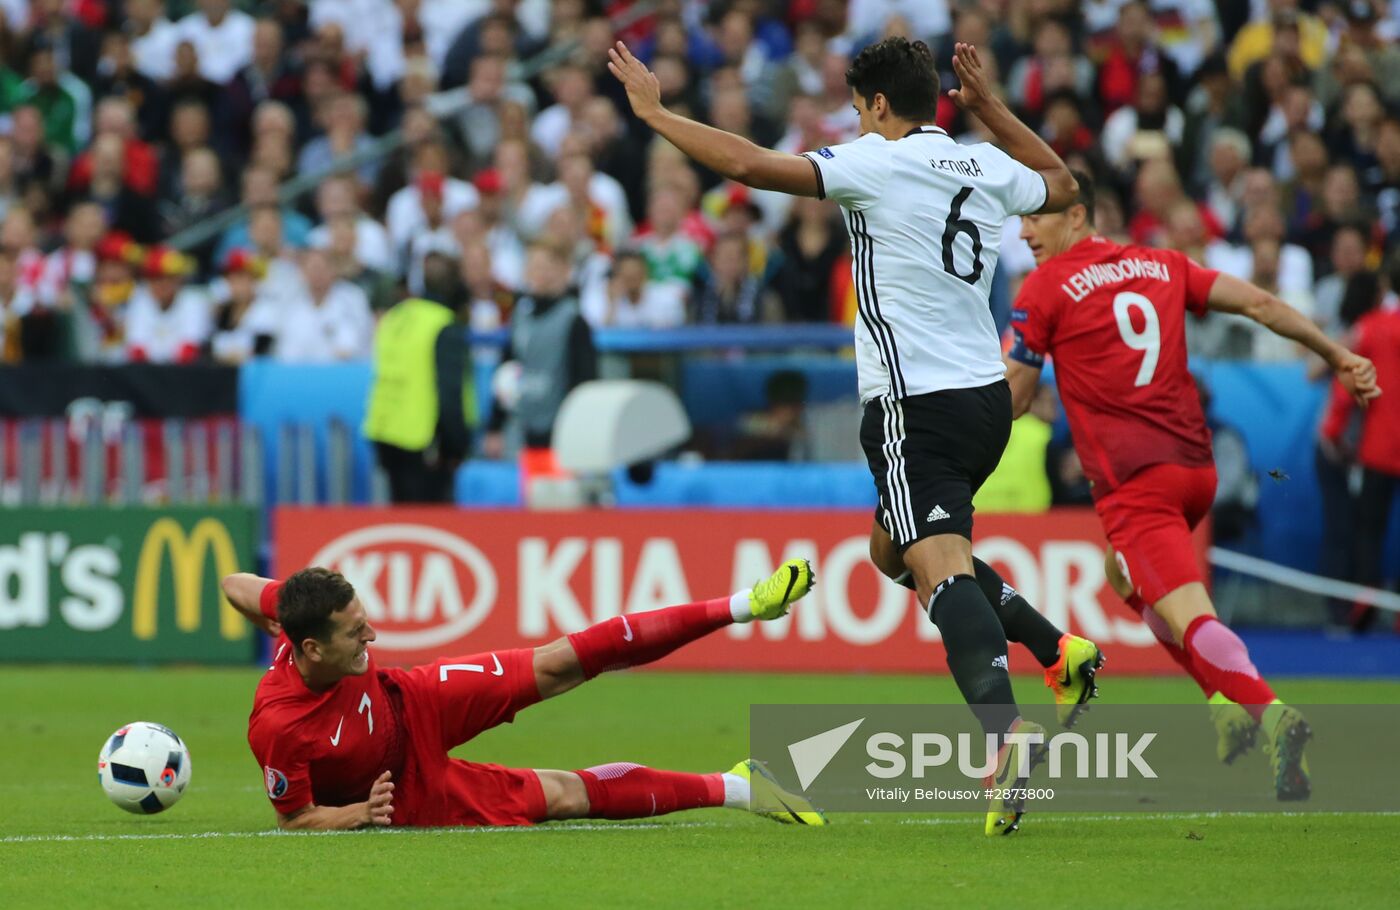 UEFA Euro 2016. Germany vs. Poland